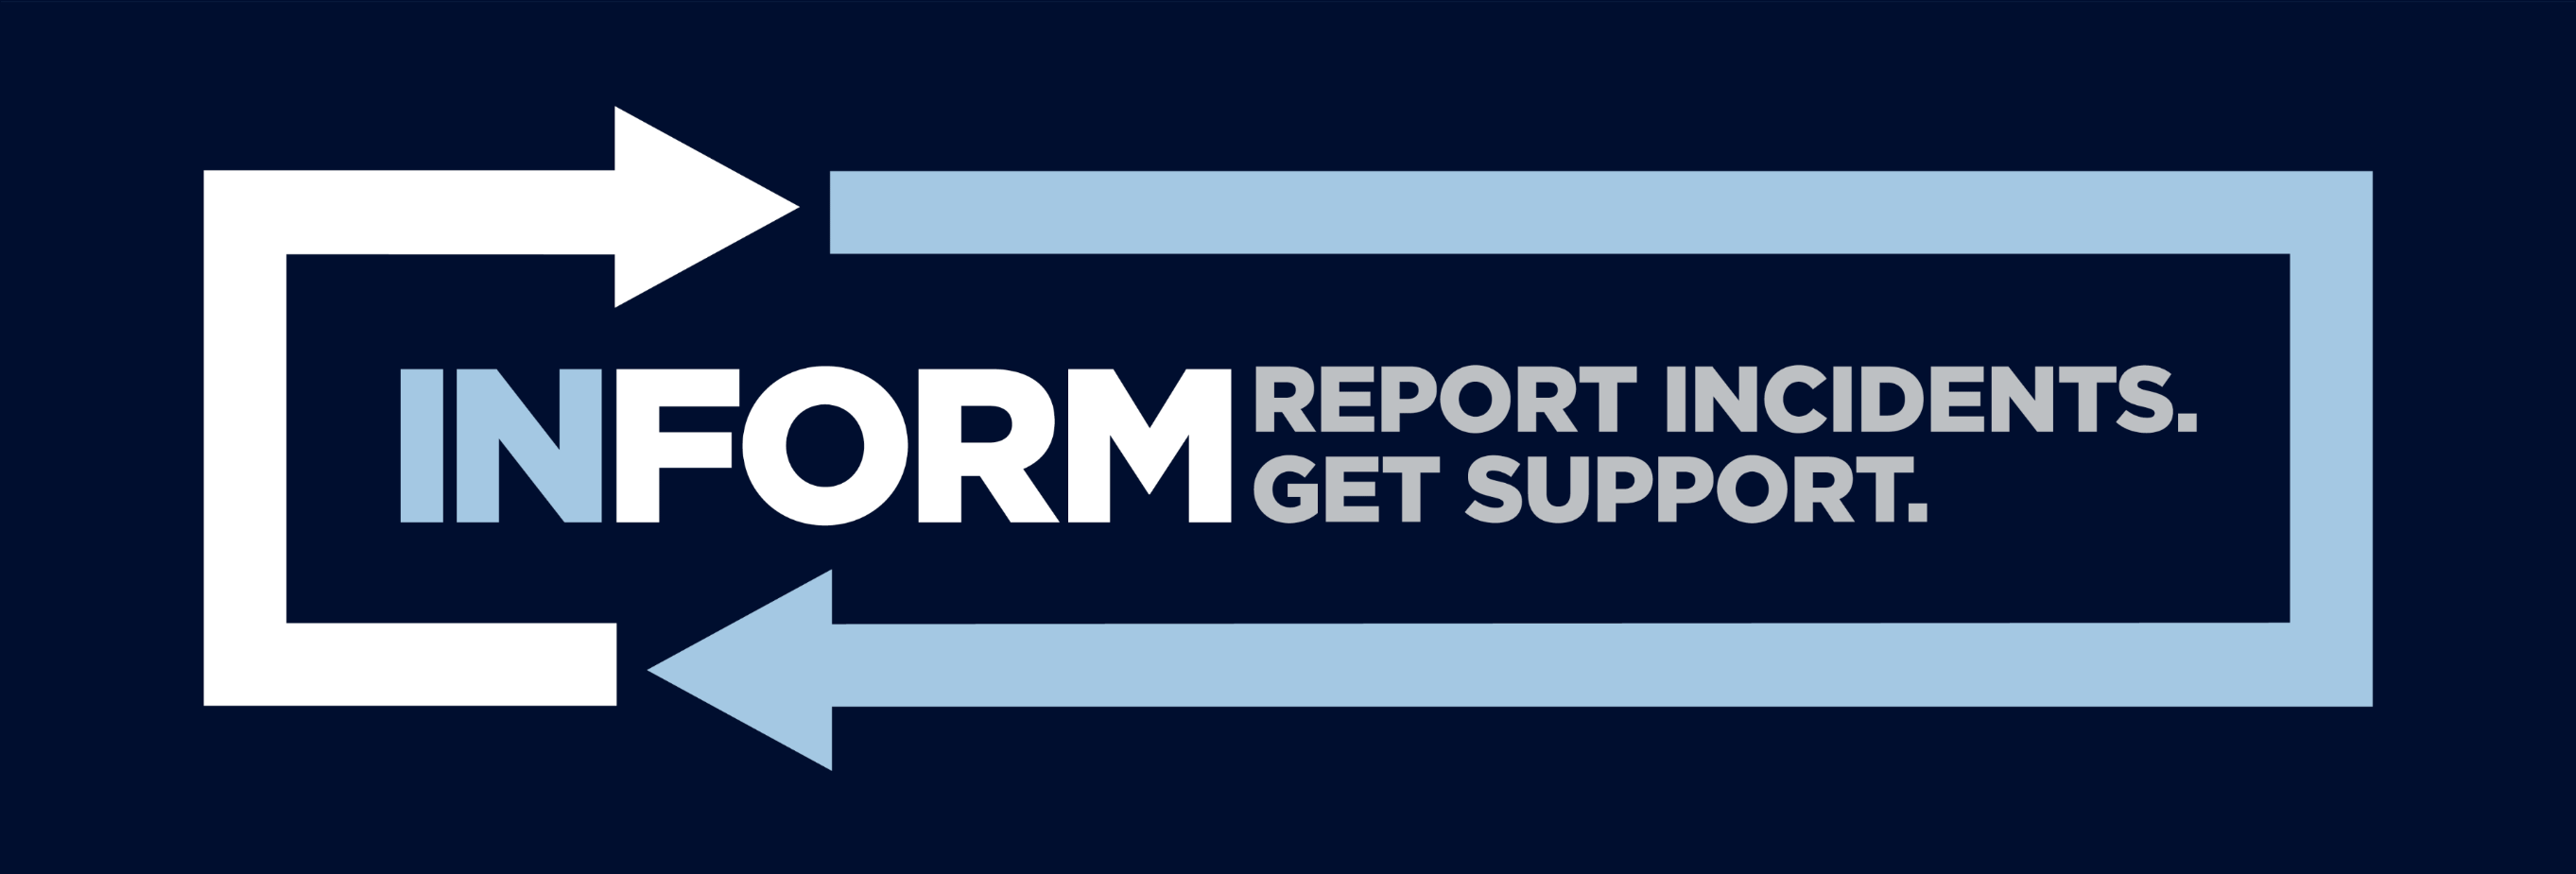 UConn Inform - Report Incidents. Get Support